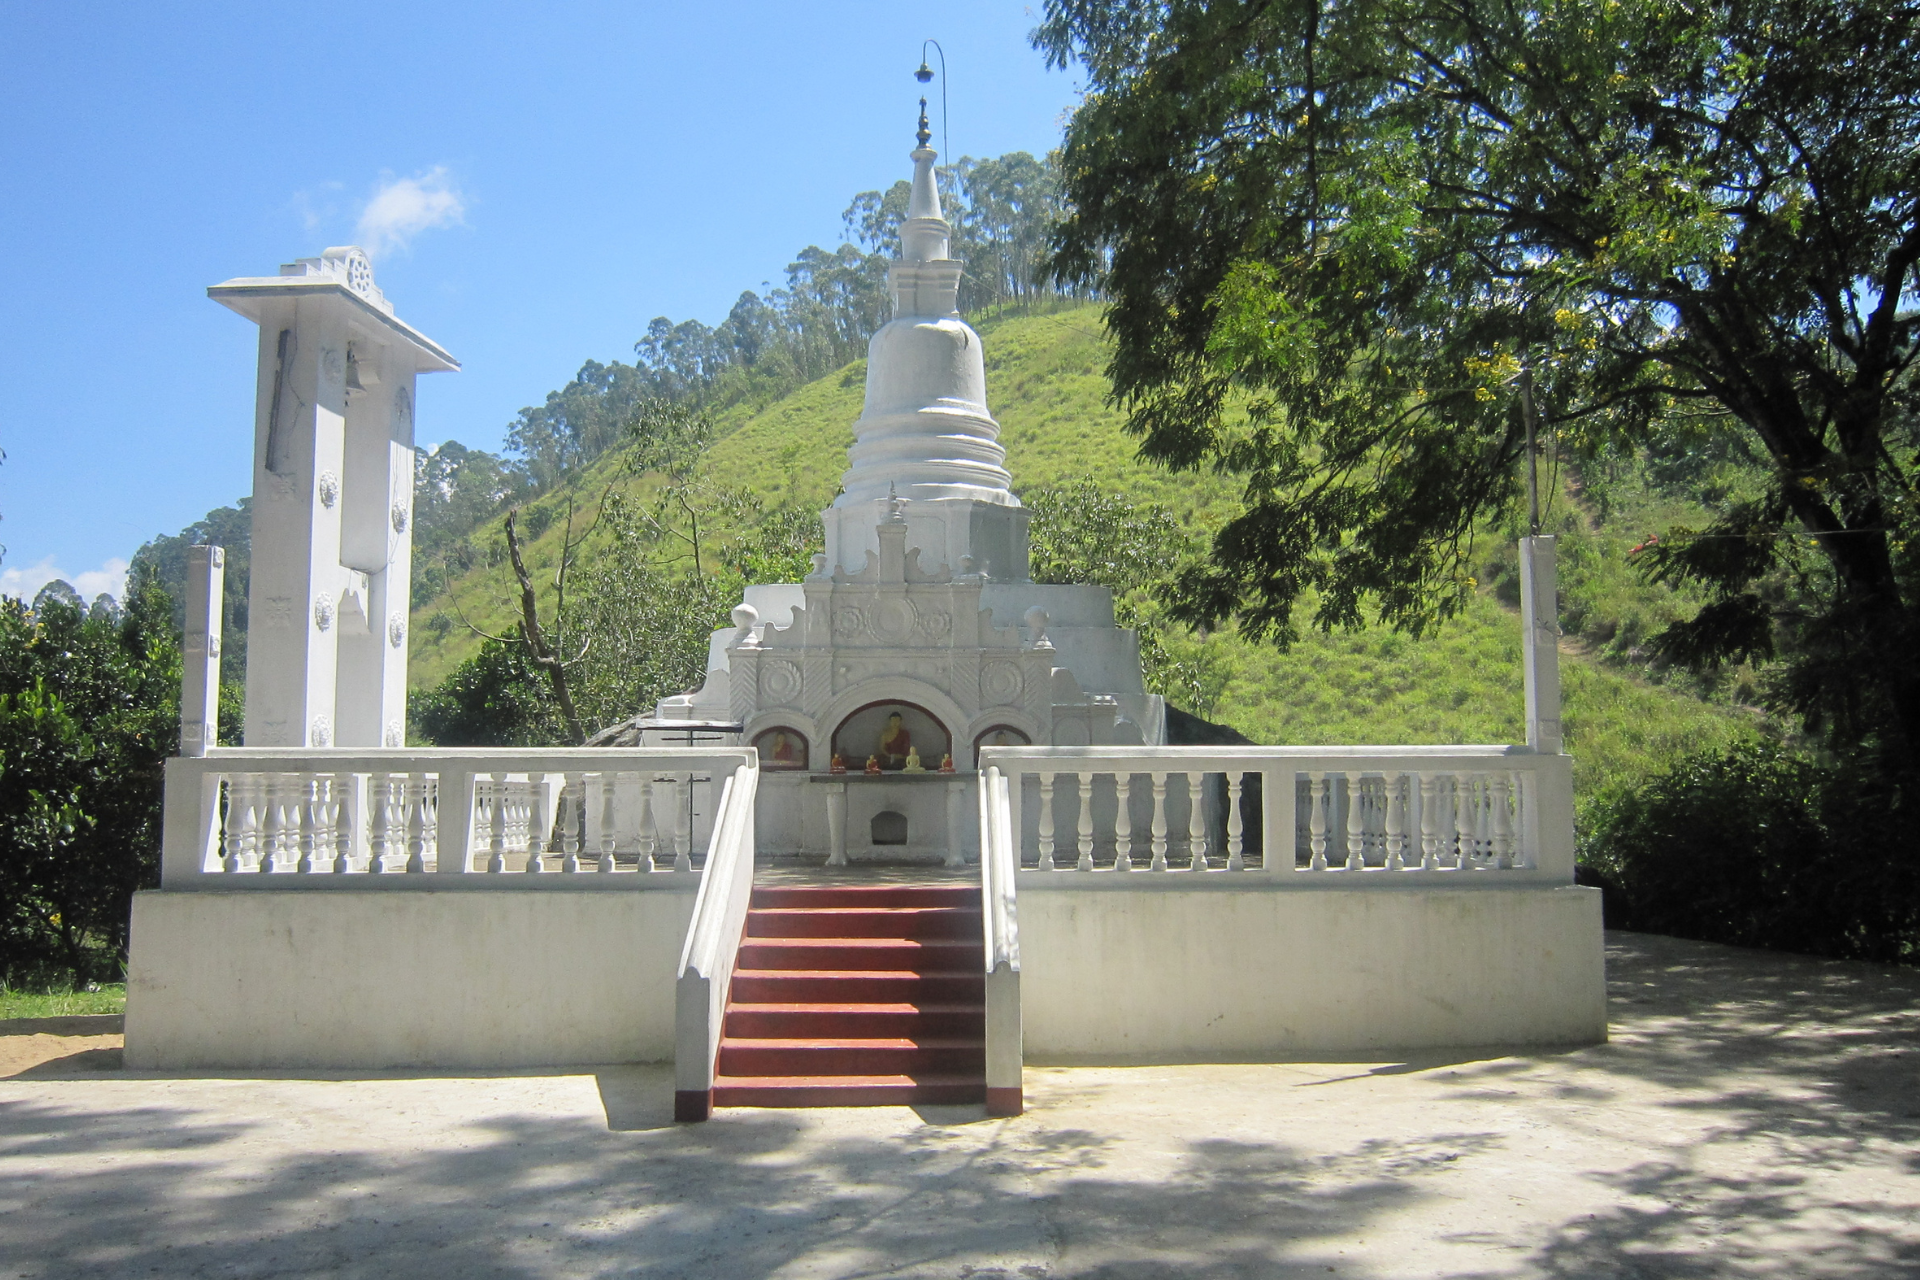 The stupa at the Dhowa raja maha viharaya